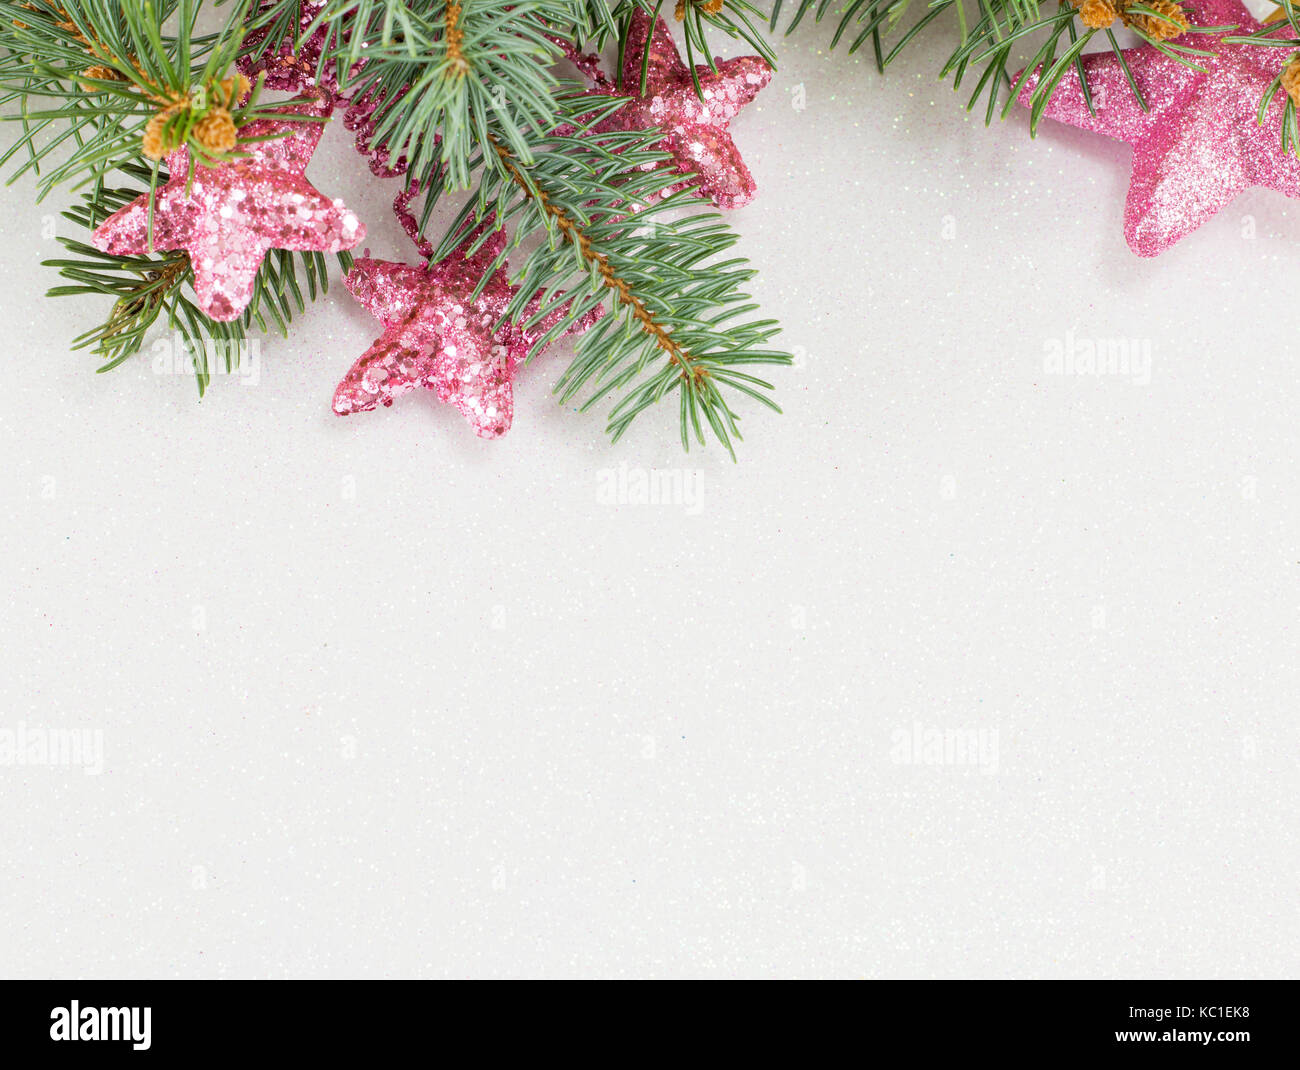 Rosa sternförmigen Ornamente hängend an einer Tanne Zweig. Weihnachtsfeier Zeit. Stockfoto